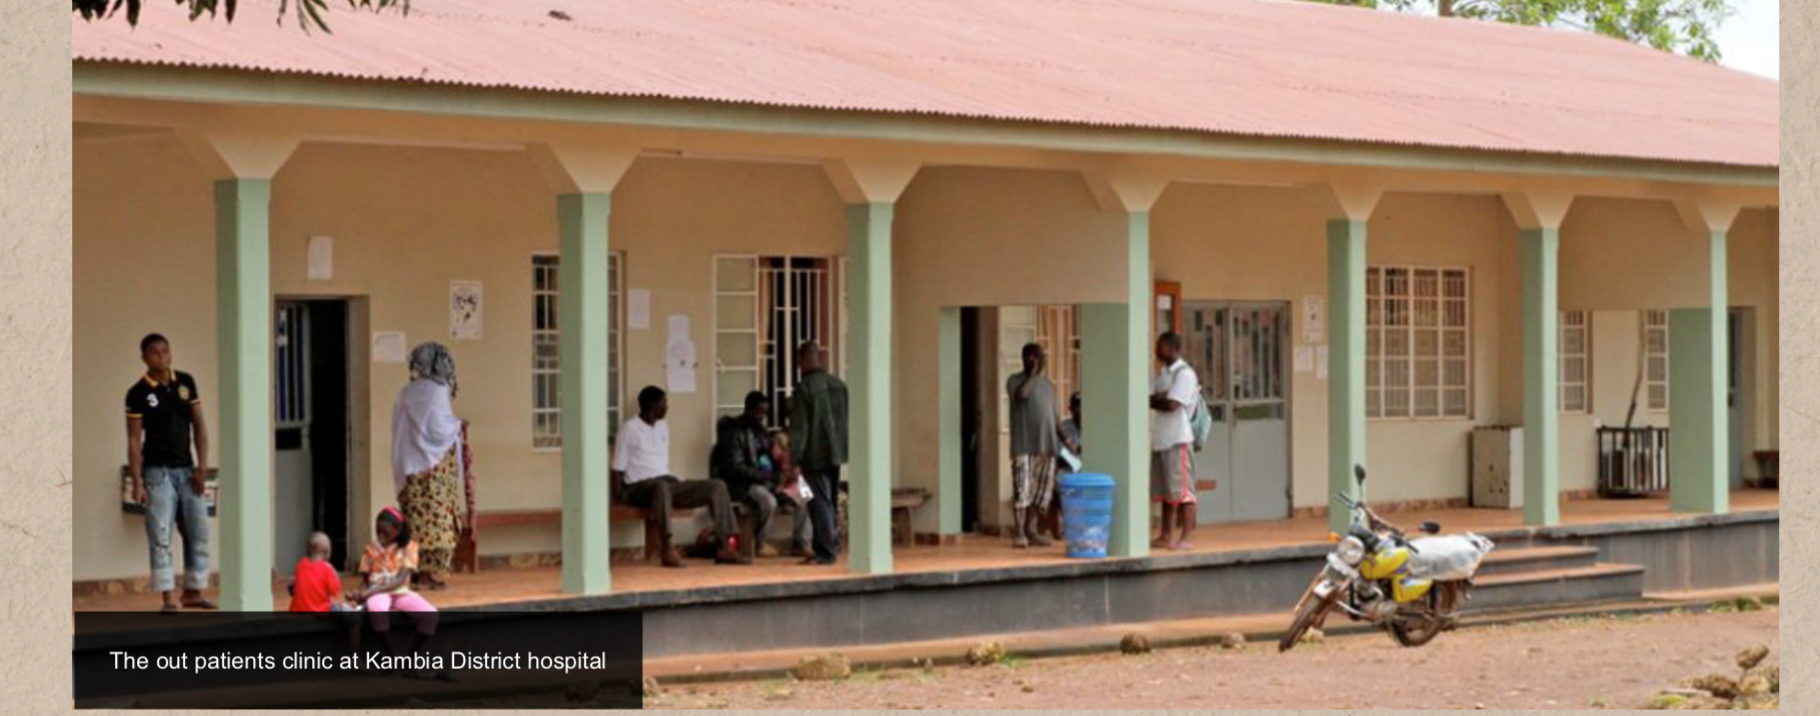 Сьерра-Леоне увеличит внутреннее финансирование здравоохранения в 2022 году на $5,9 млн в связи с сокращением донорских средств